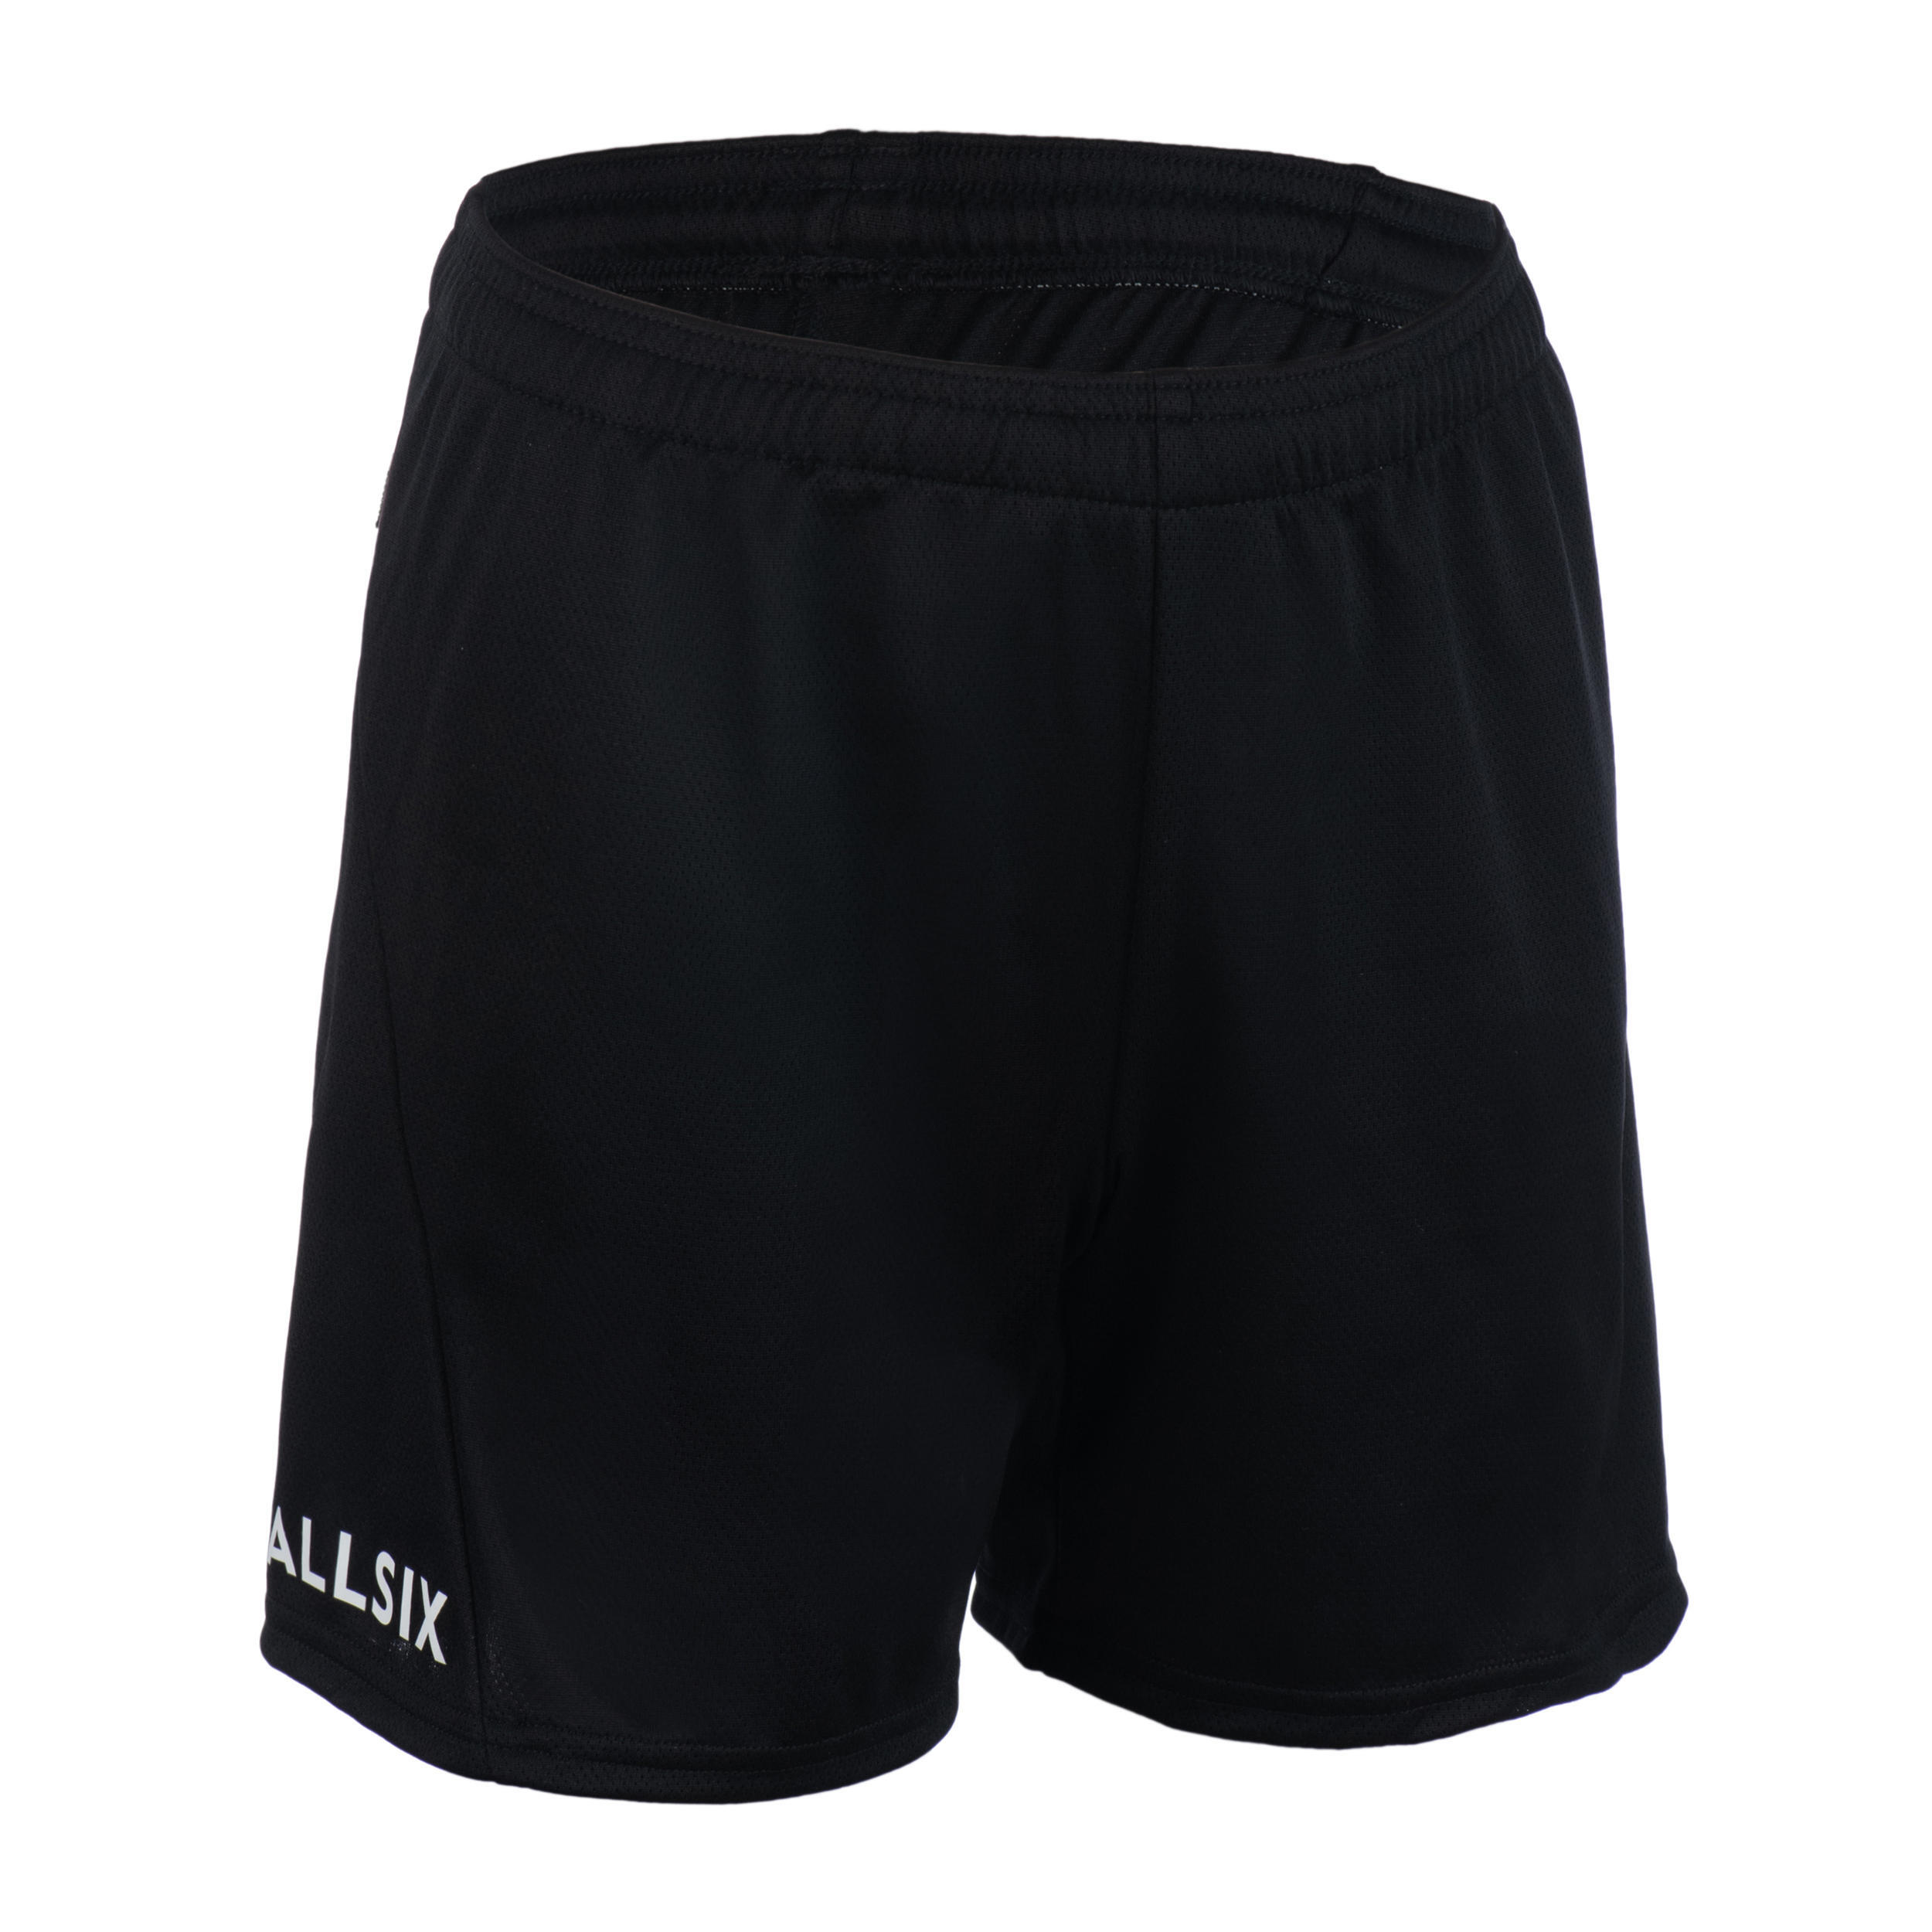 Мужские волейбольные шорты - VS Training черные ALLSIX, черный волейбольные шорты женские v100 черные allsix черный